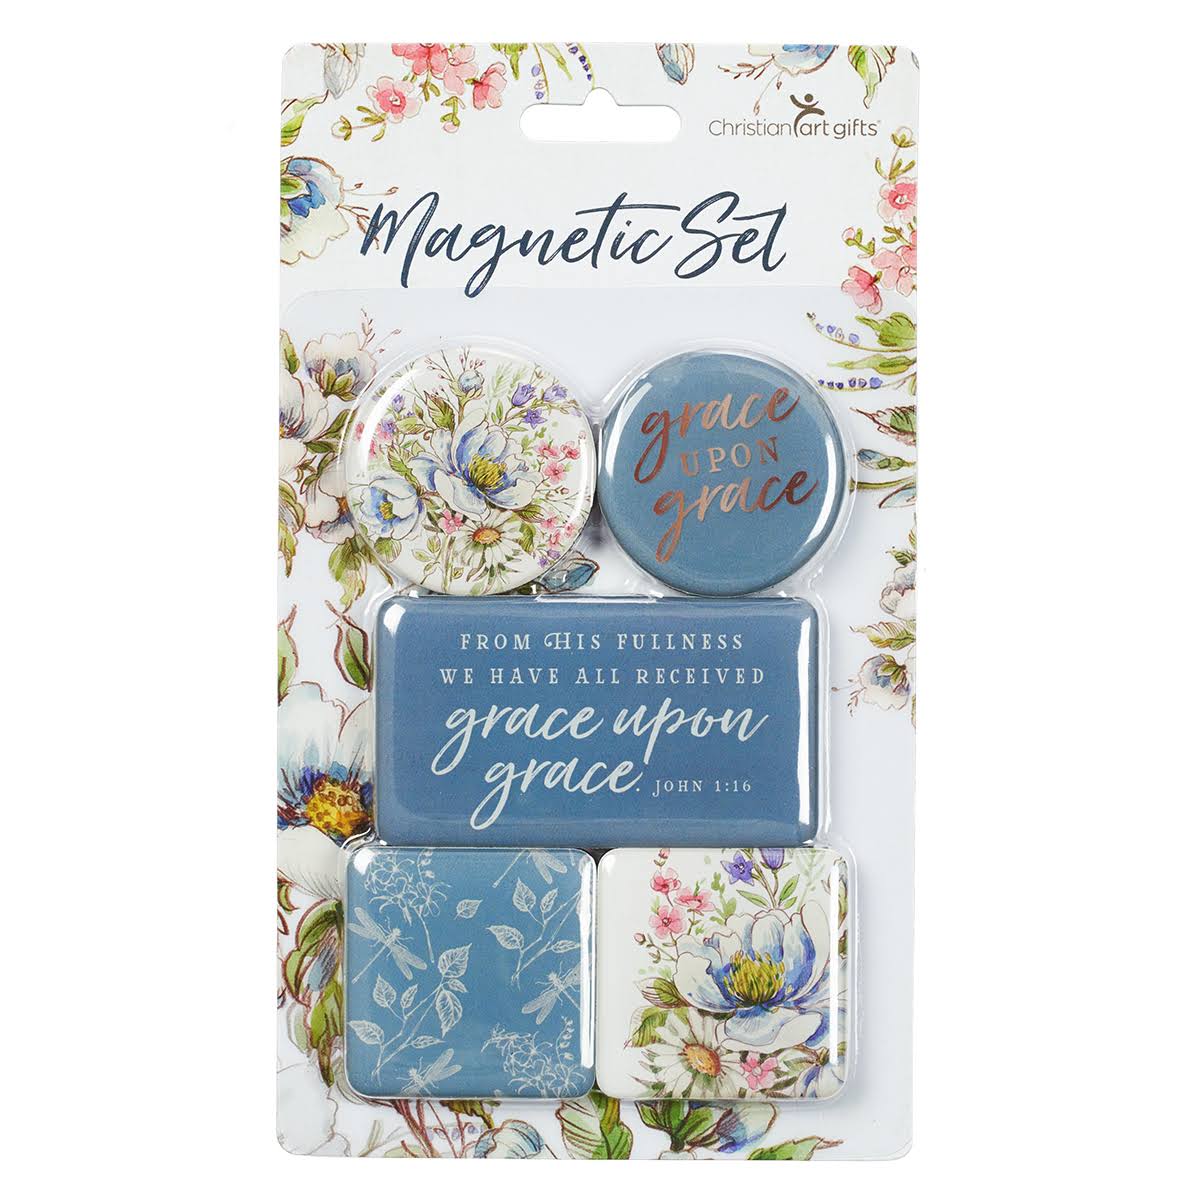 Grace Upon Grace Magnetic Set - Blue/Floral, 5pcs